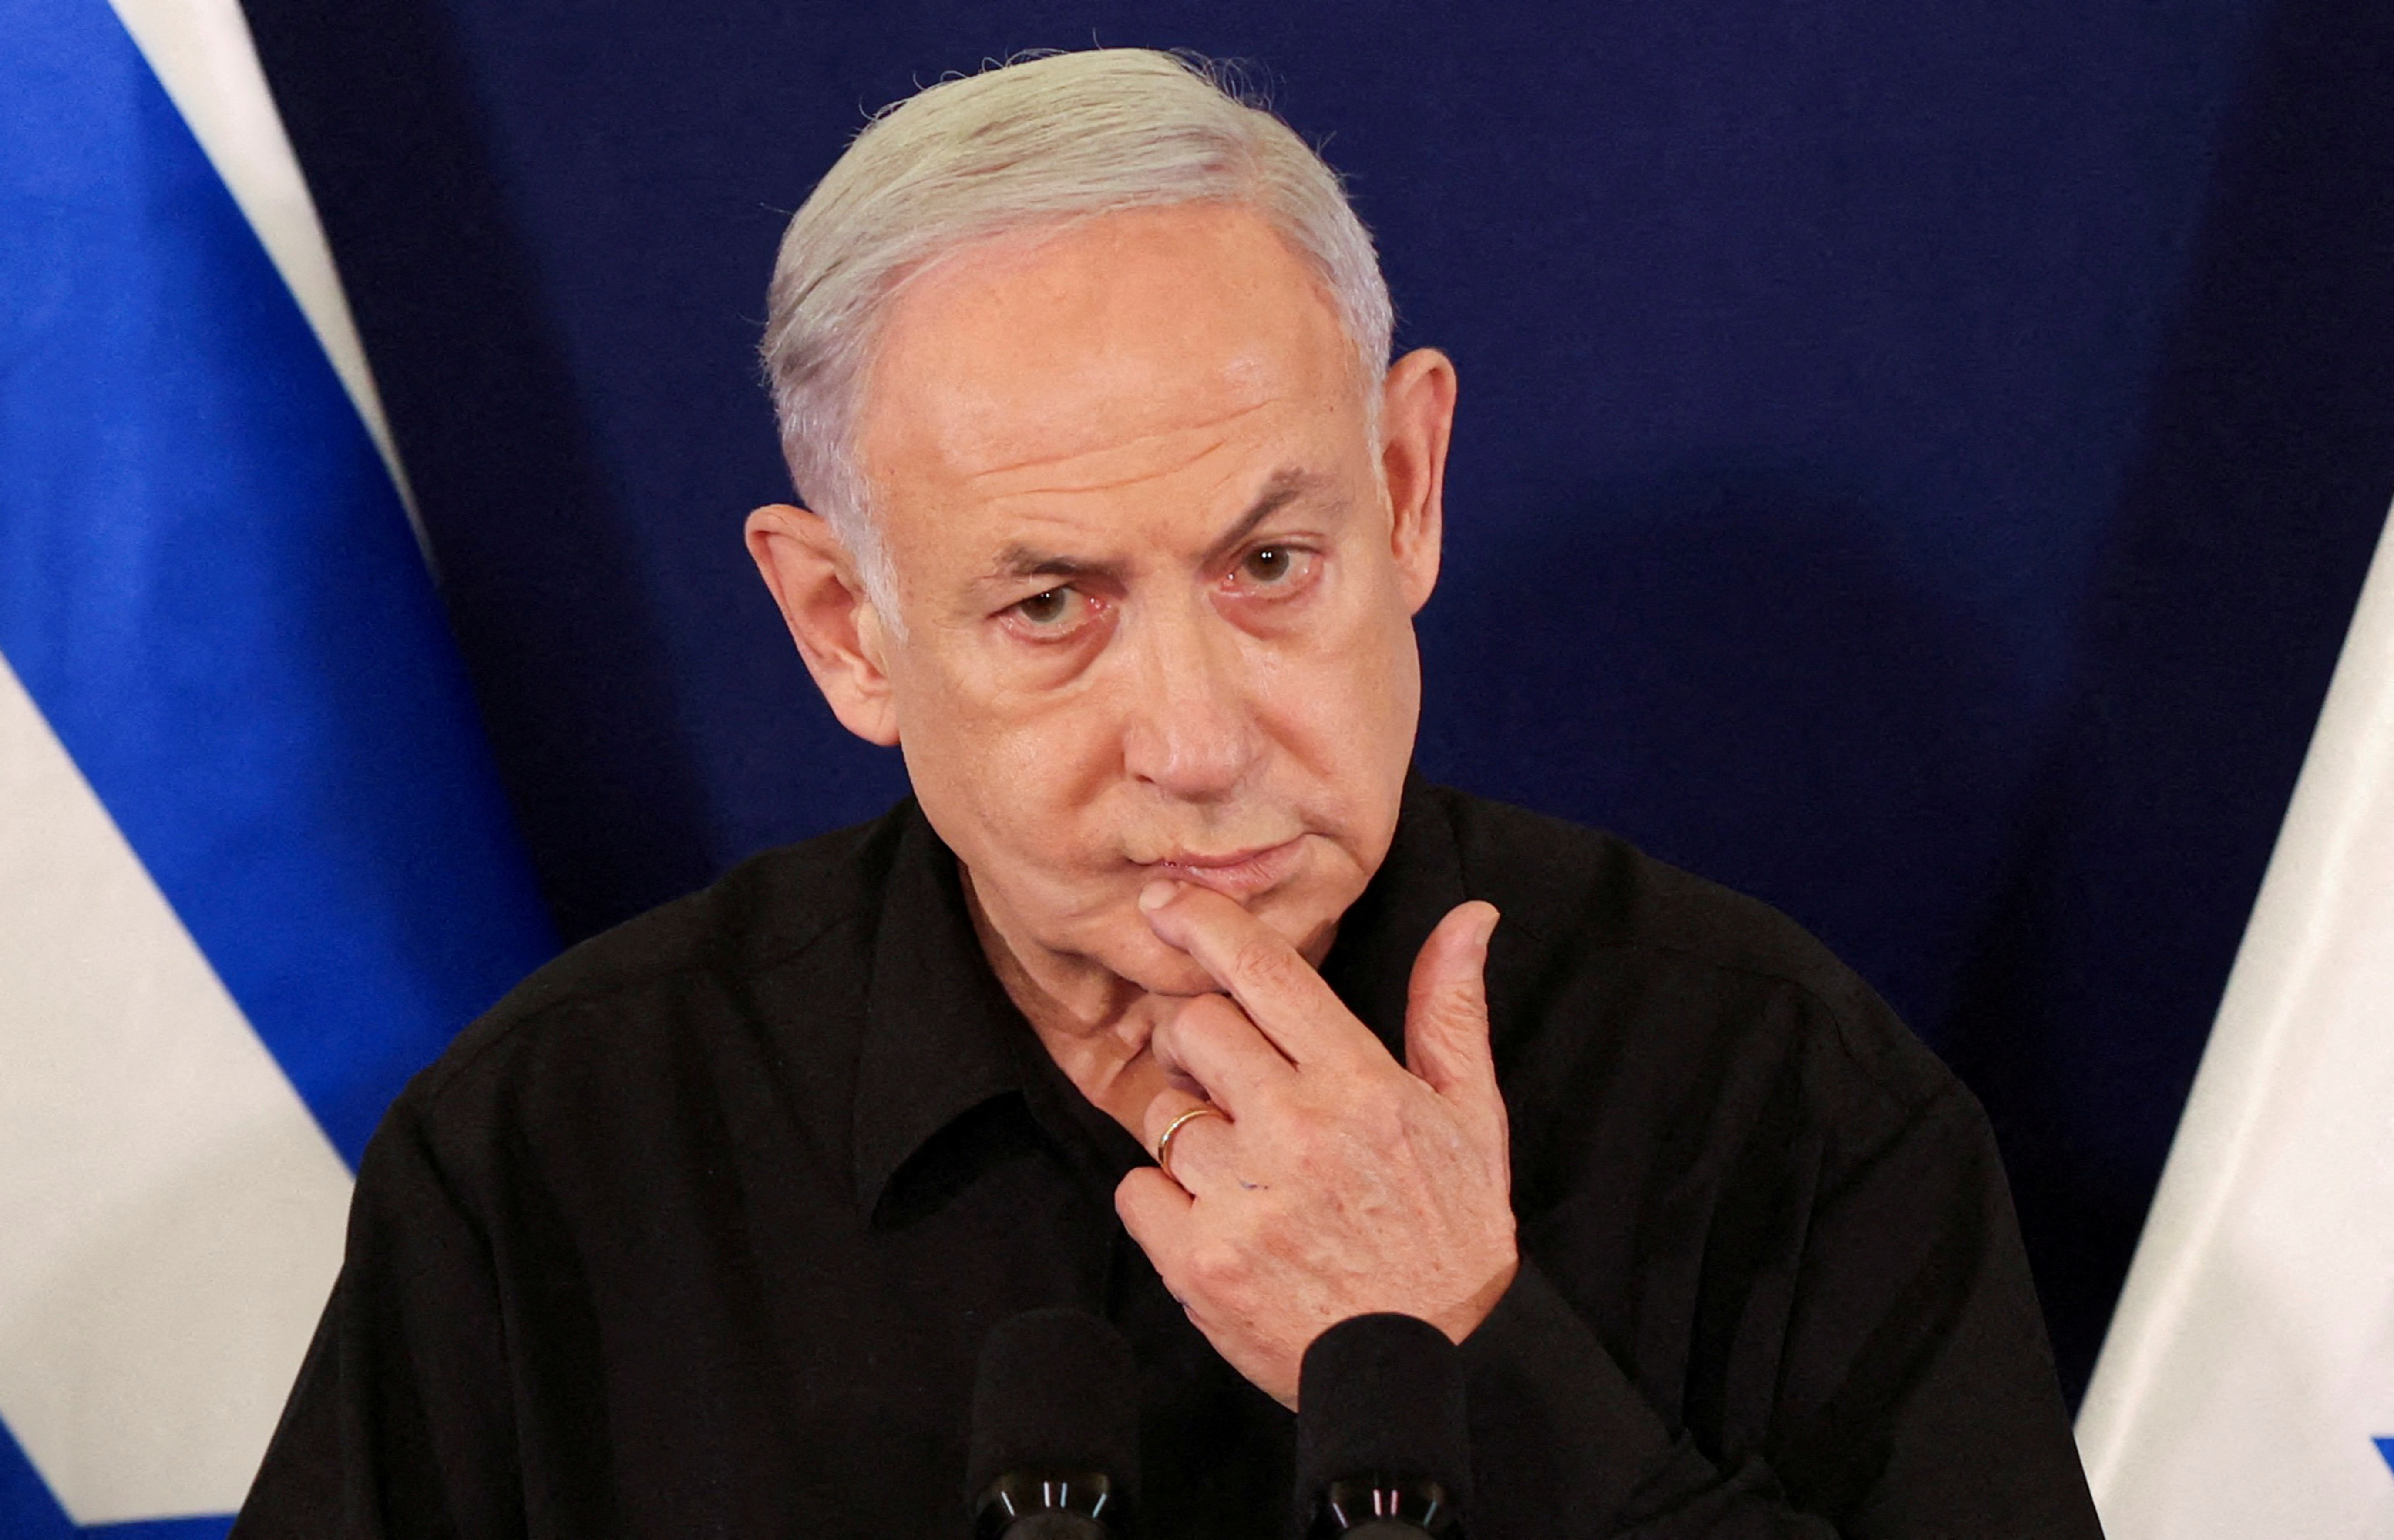 Assistons-nous à une fuite en avant du gouvernement Netanyahu